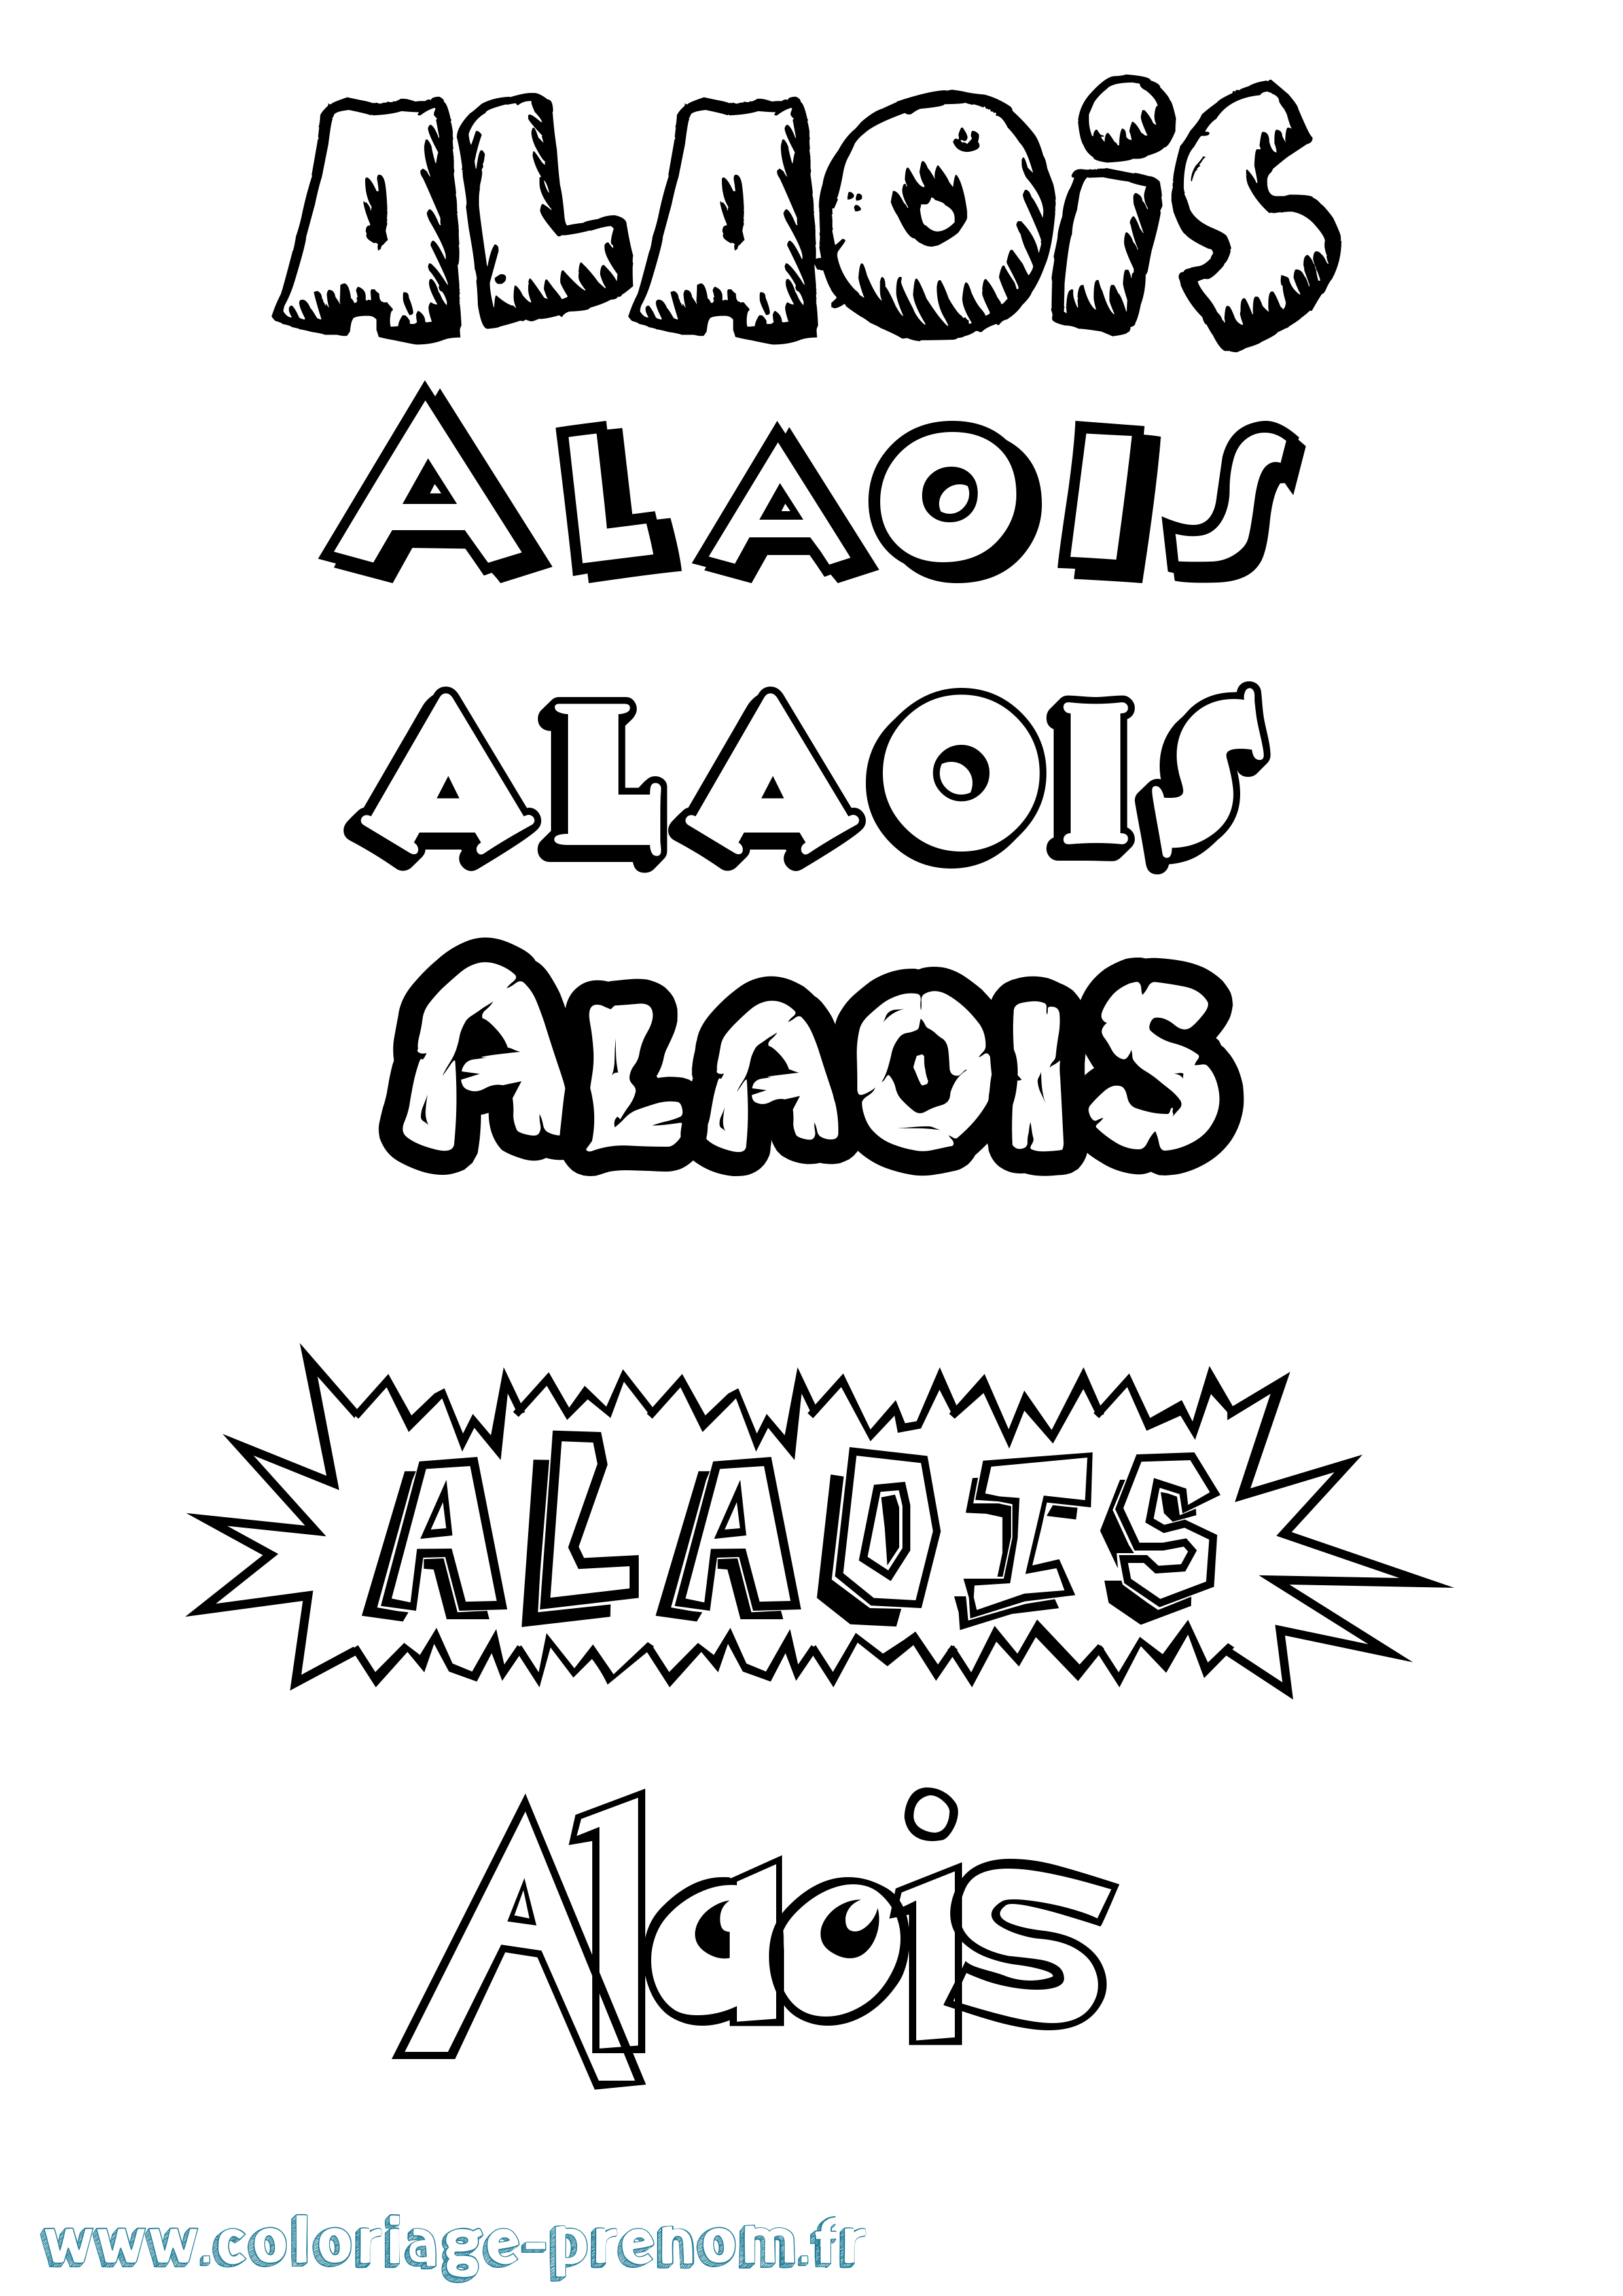 Coloriage prénom Alaois Dessin Animé